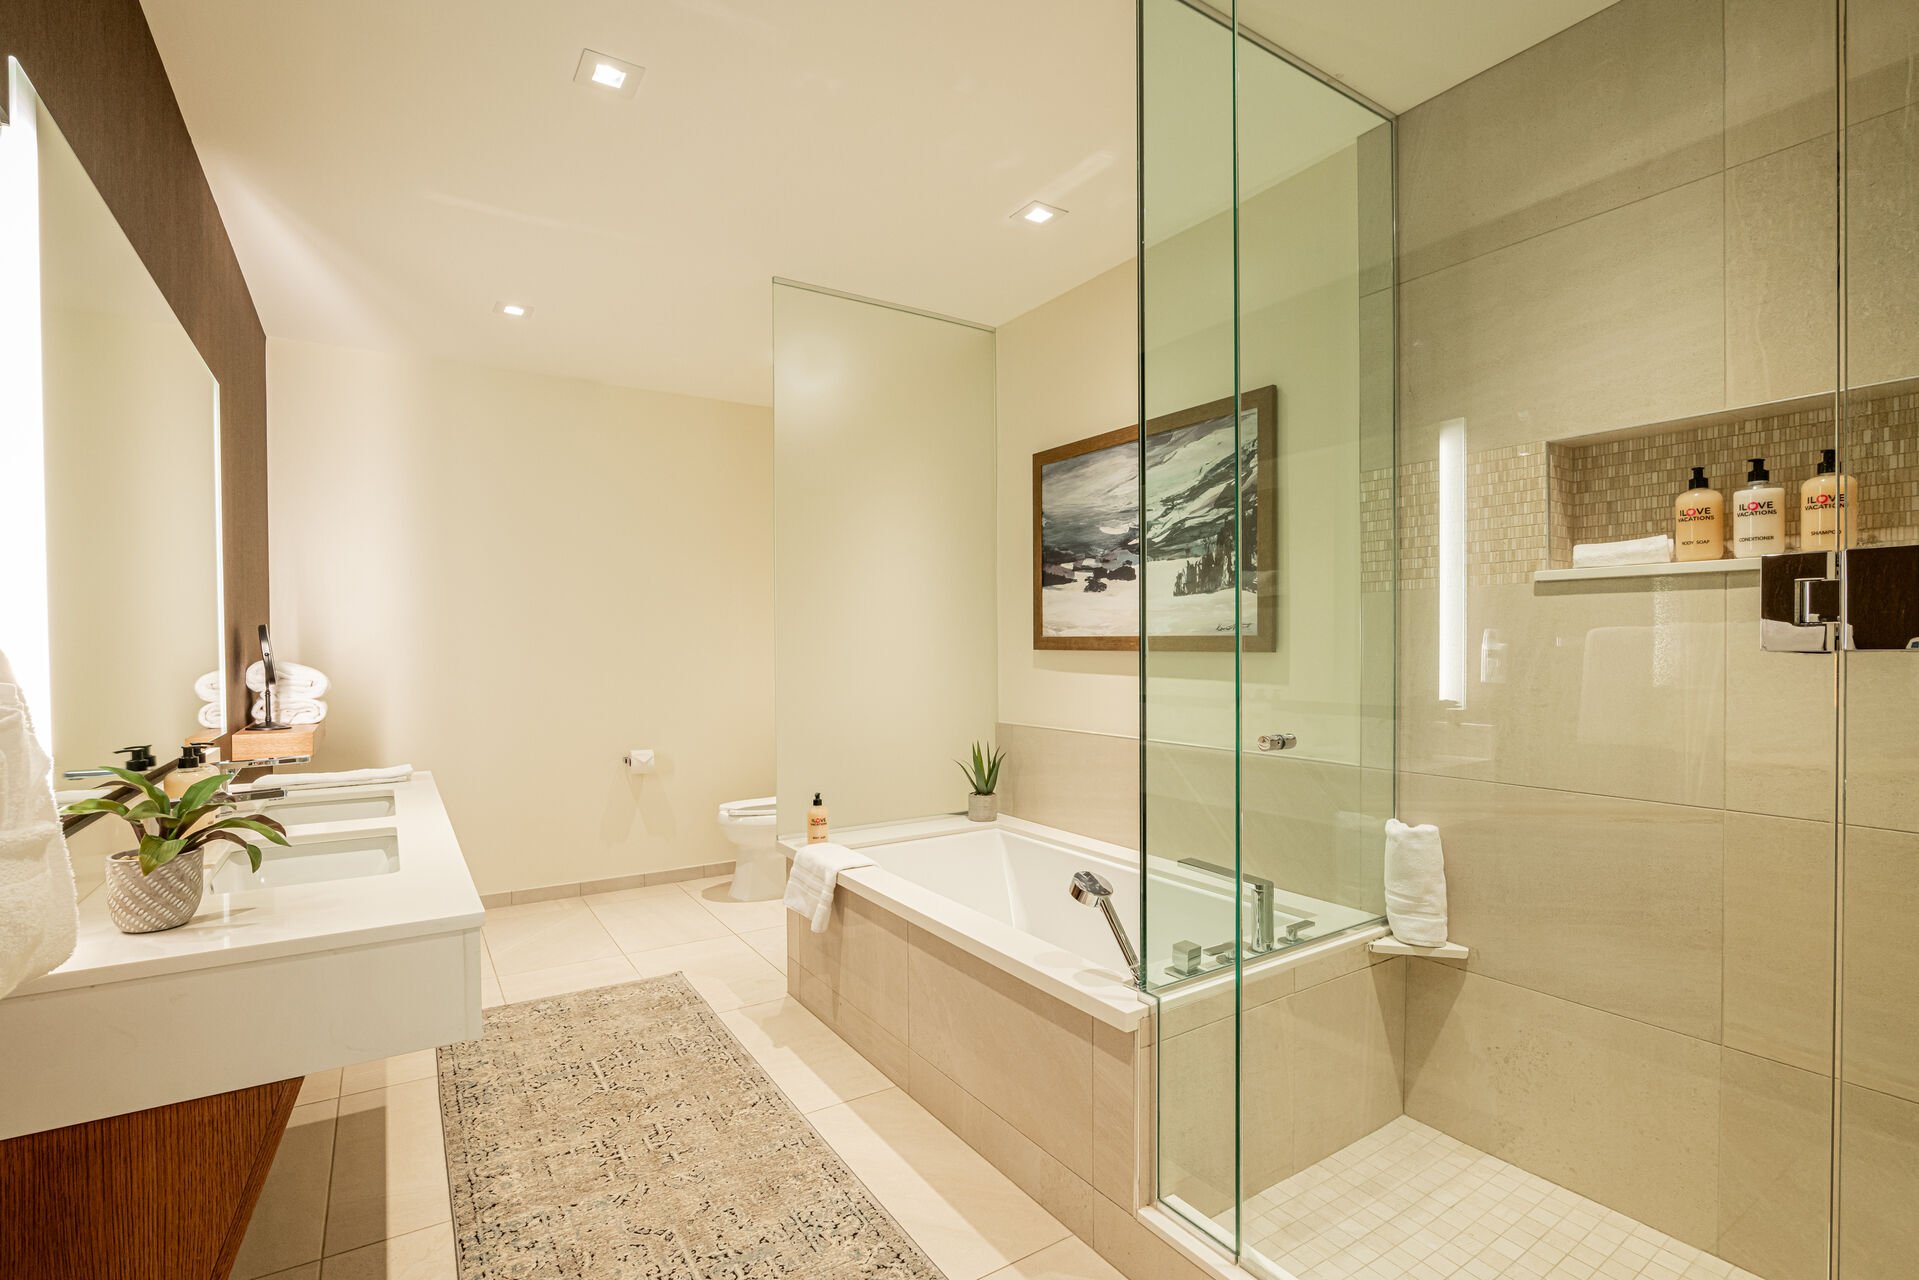 Master bedroom 1 en suit bathroom with glass shower